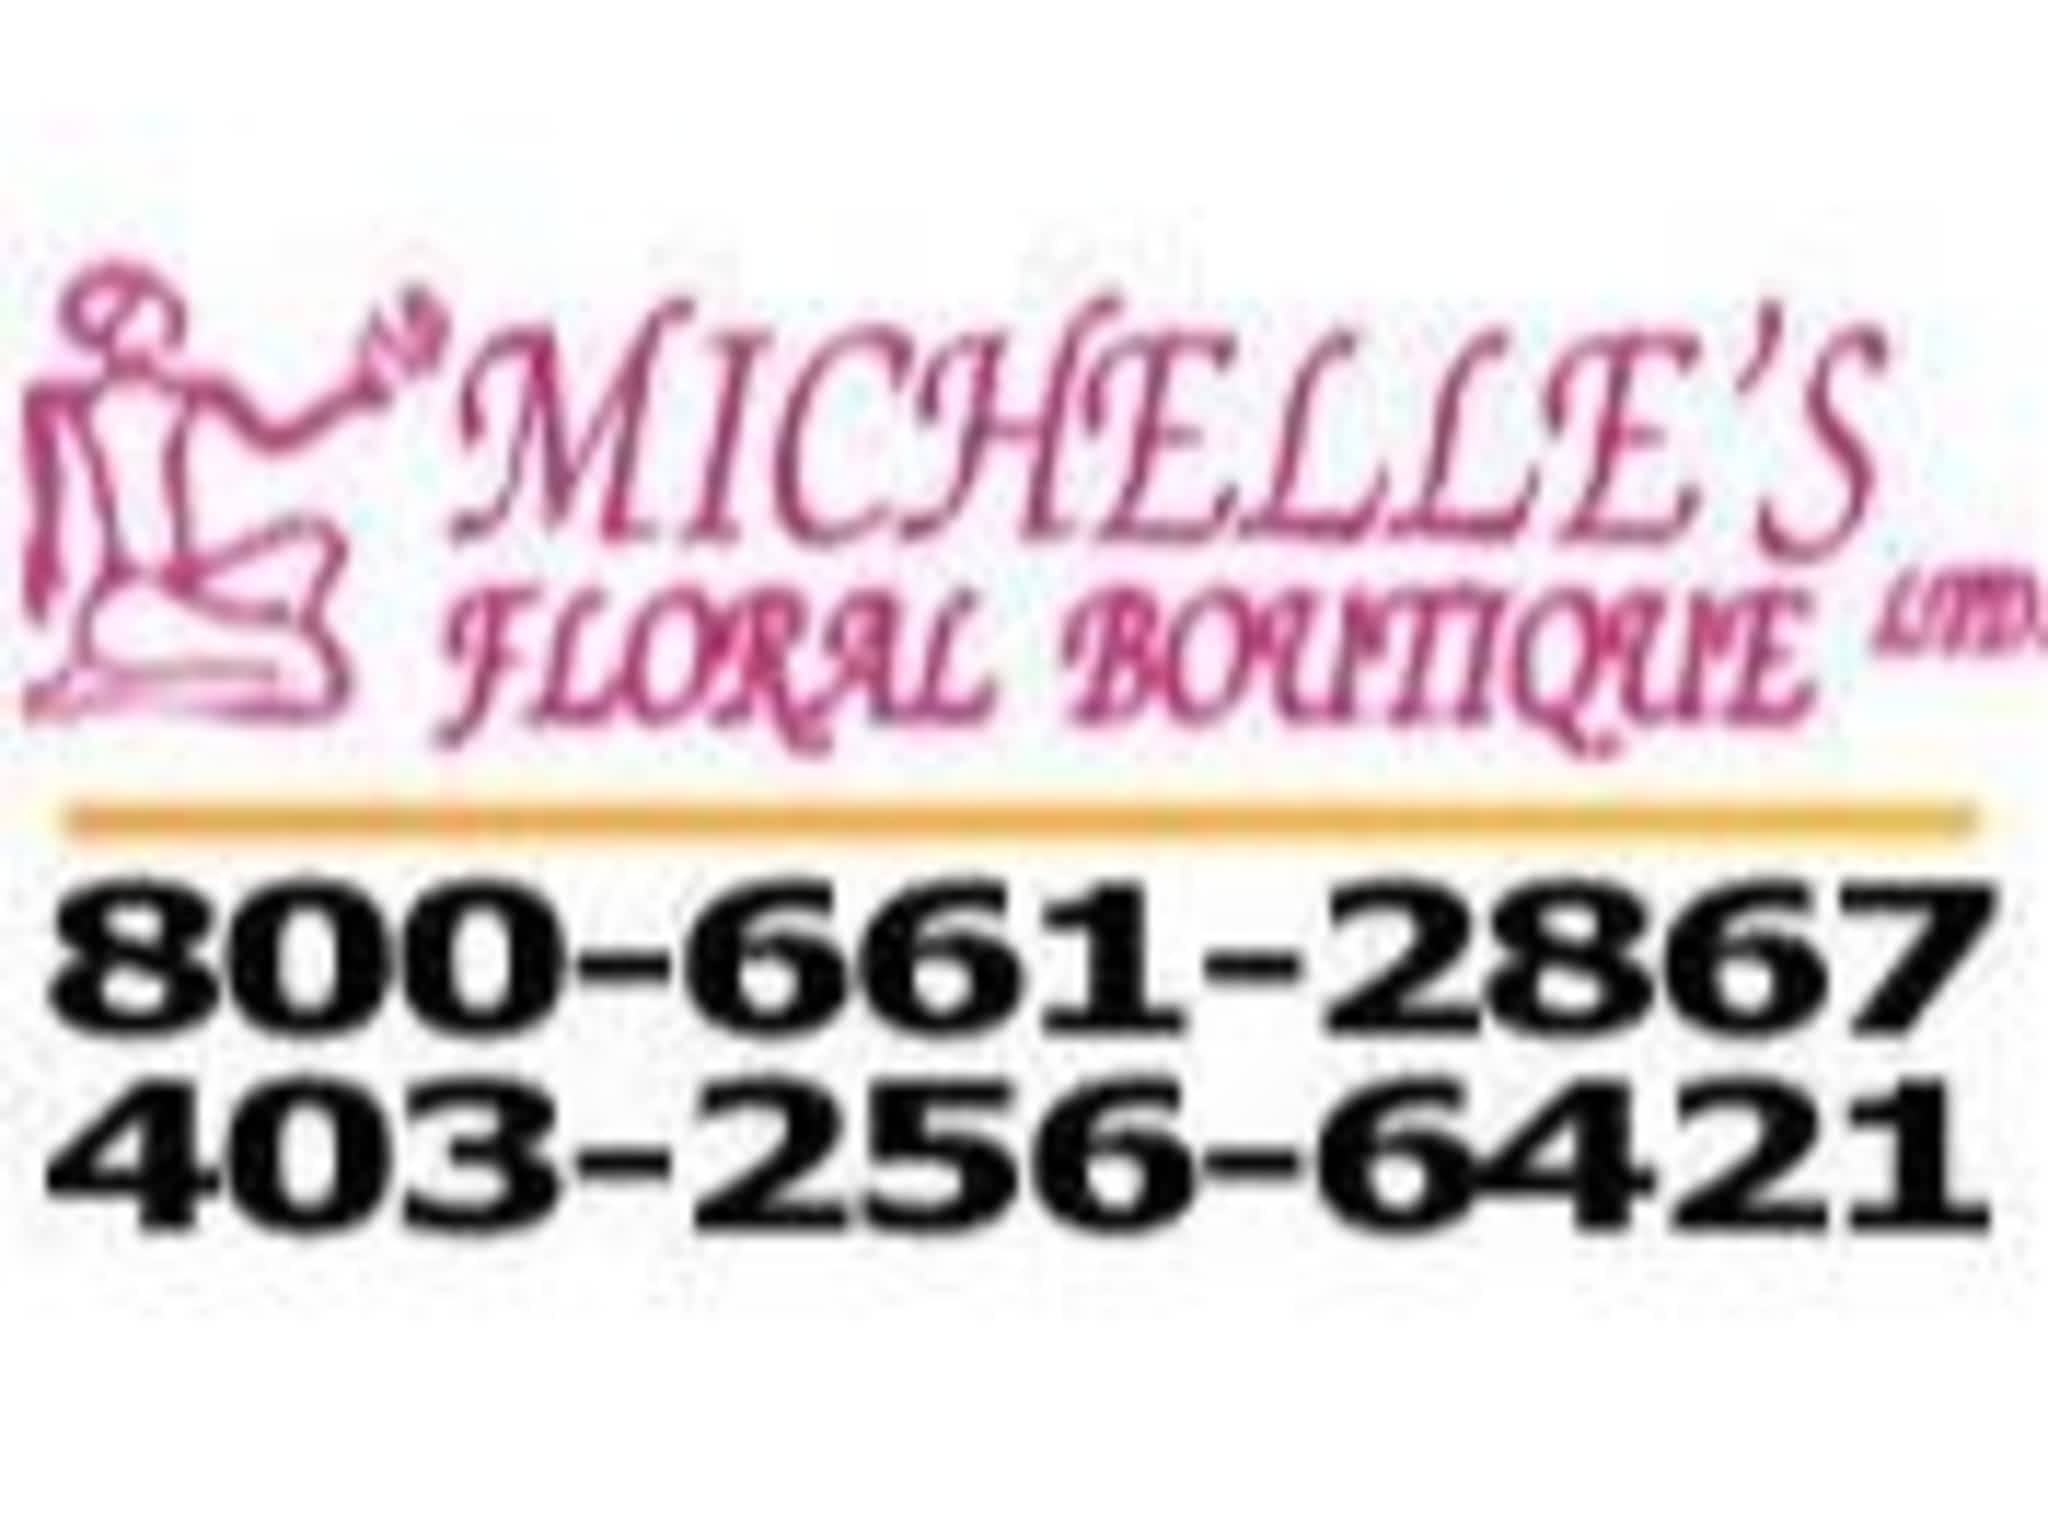 photo Michelle's Floral Boutique